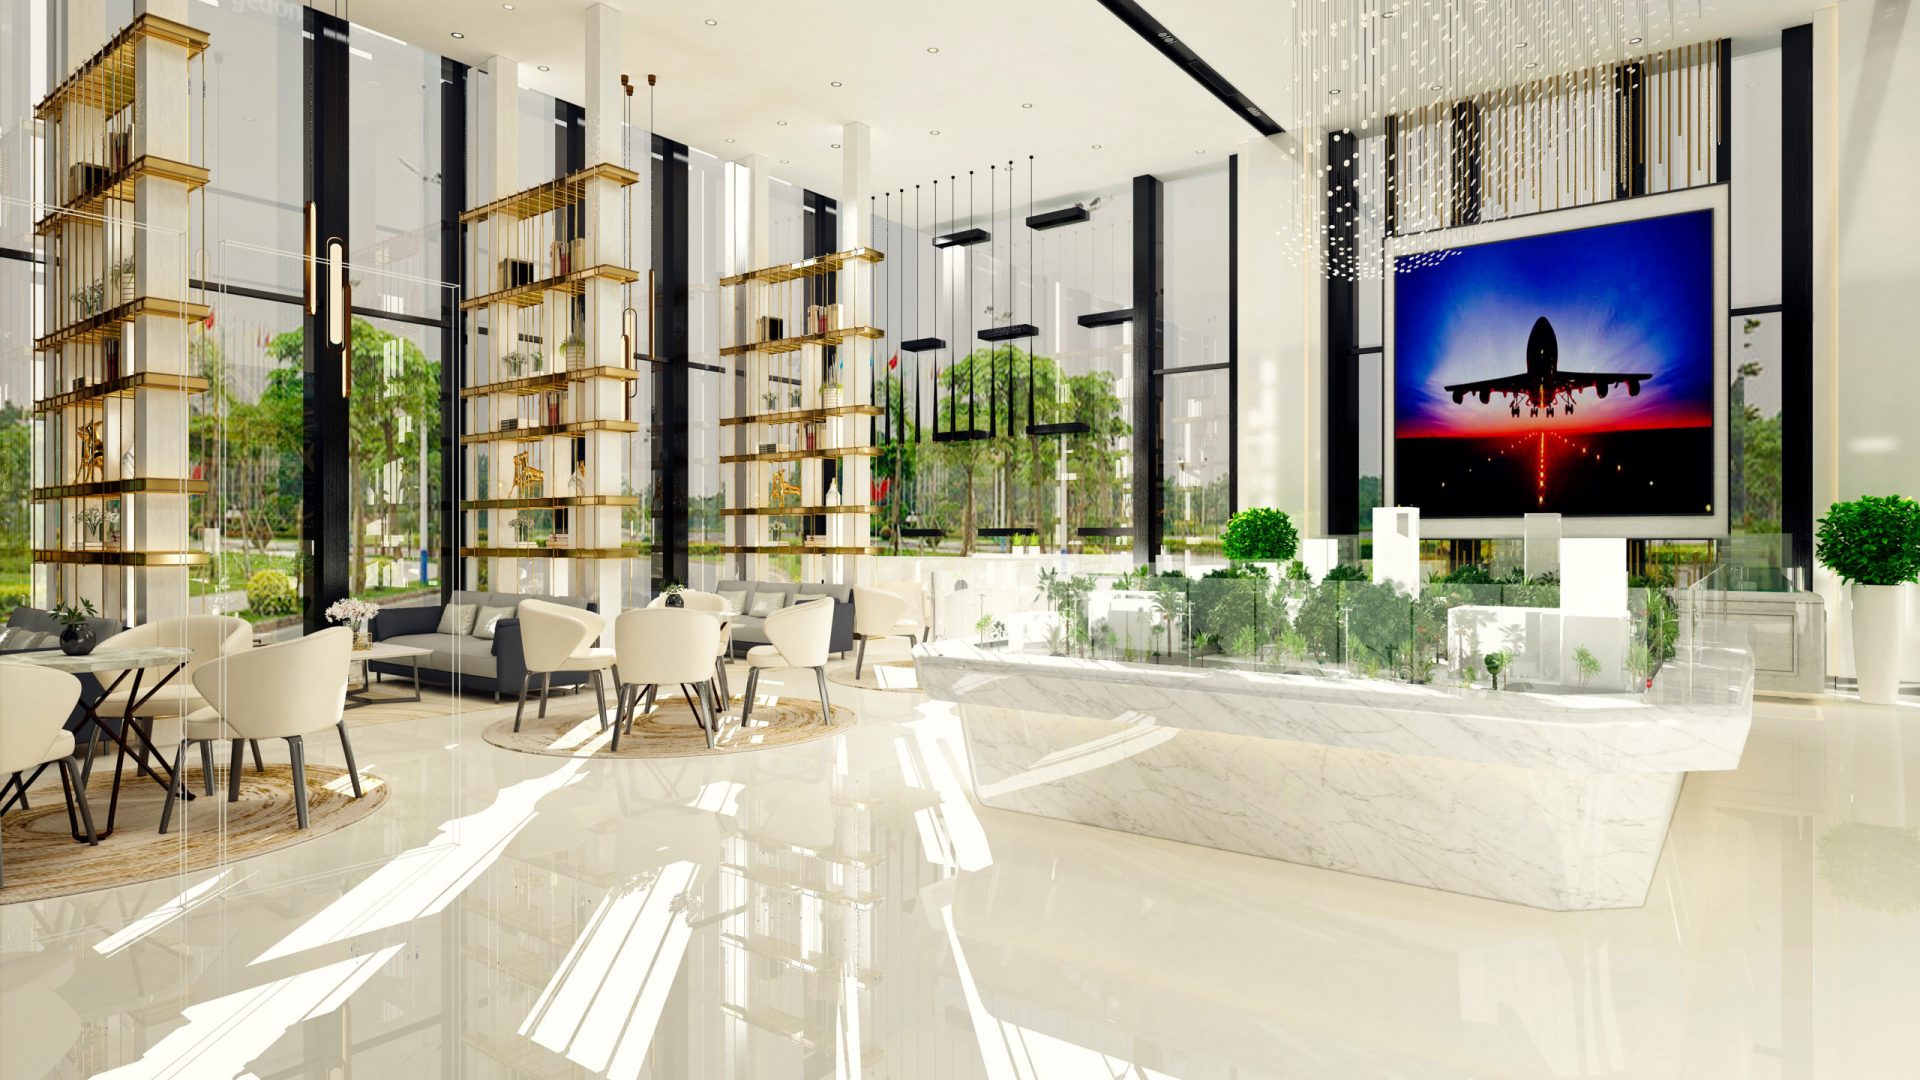 3d render of luxury hotel lobby